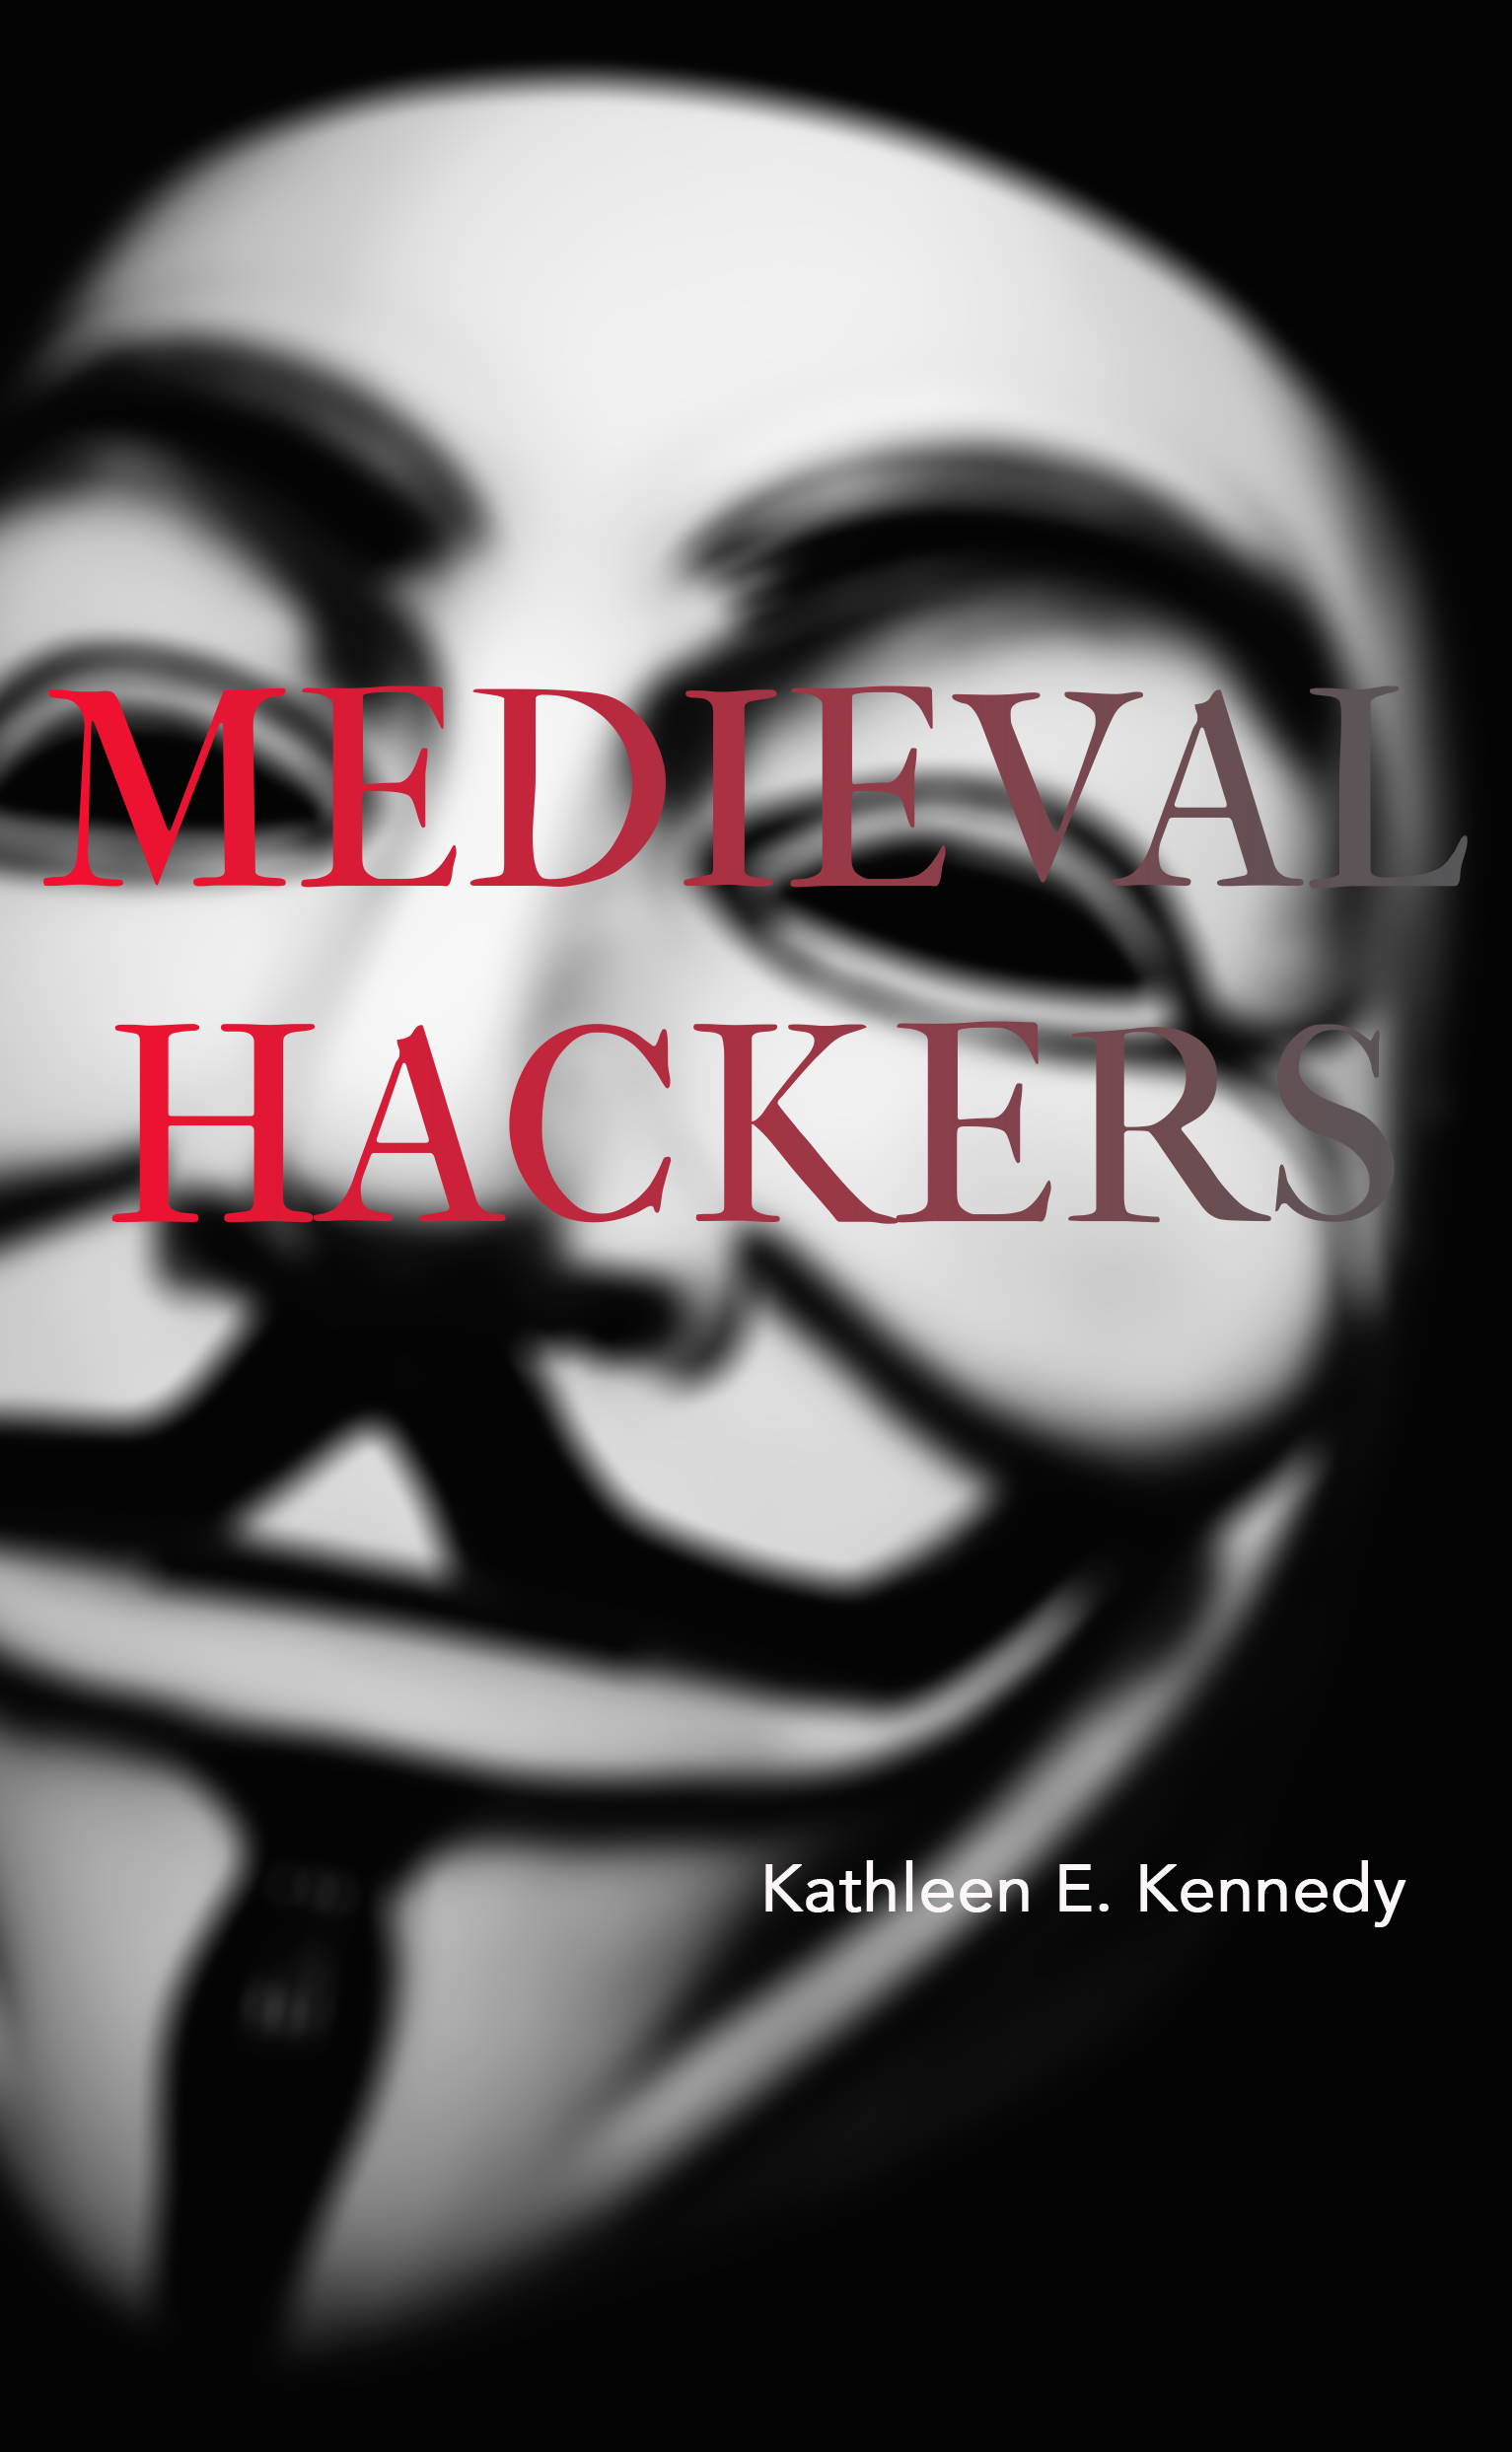 Medieval Hackers (punctum books, 2015)